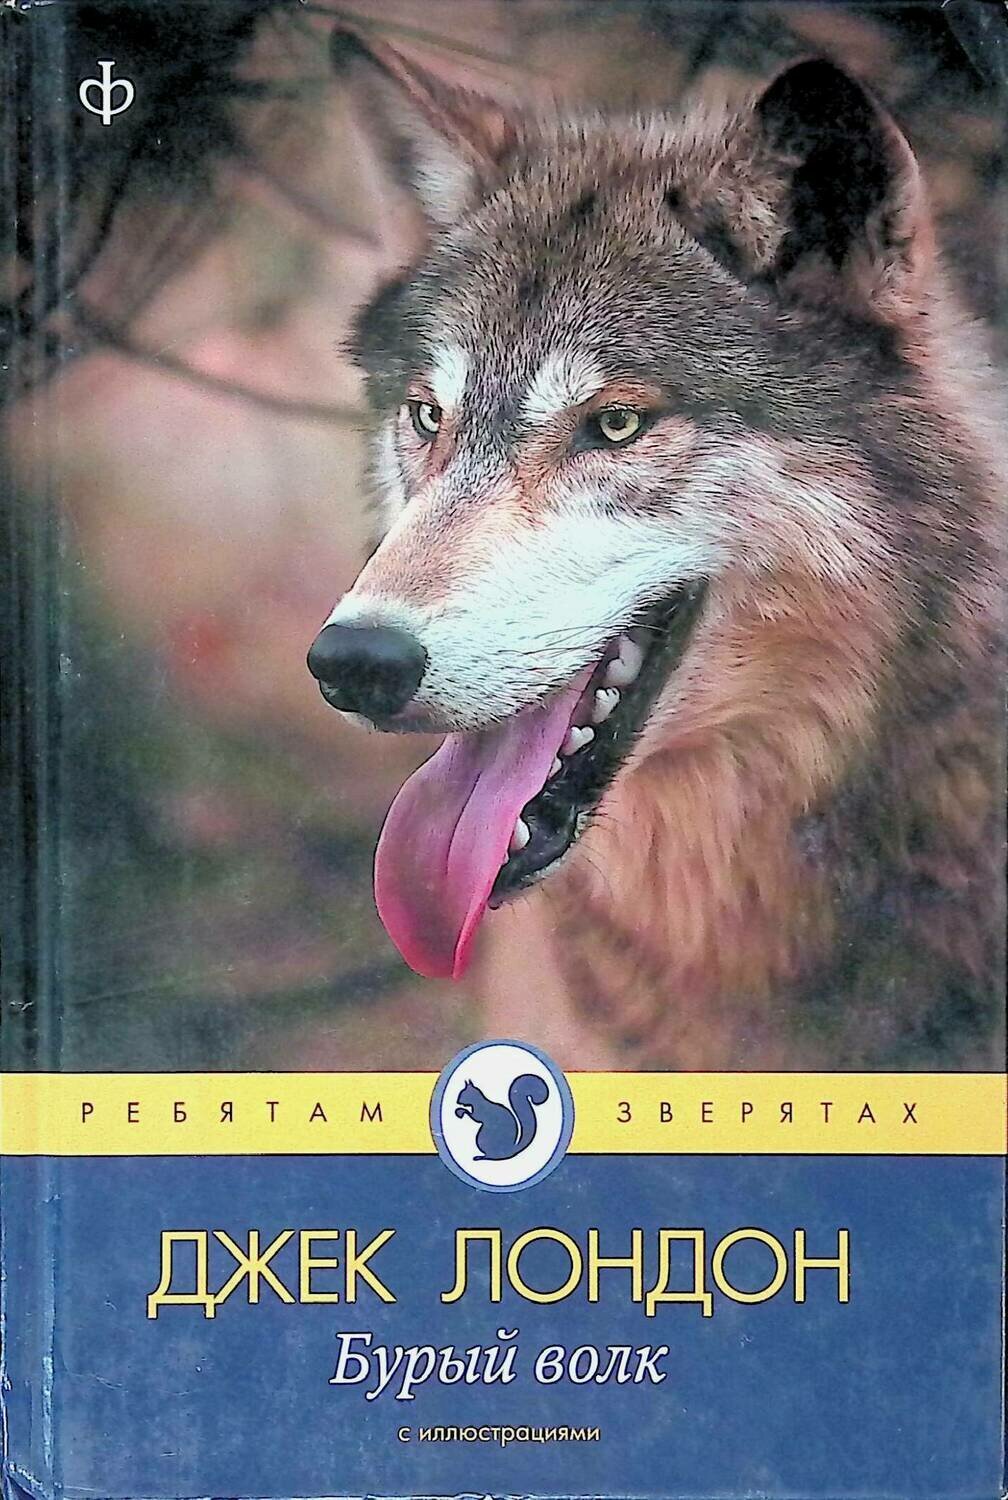 Герои произведения волки. Бурый волк Джек Лондон книга. Дж Лондон бурый волк. Книга про волка Джек Лондон. Белый волк Джек Лондон книга.